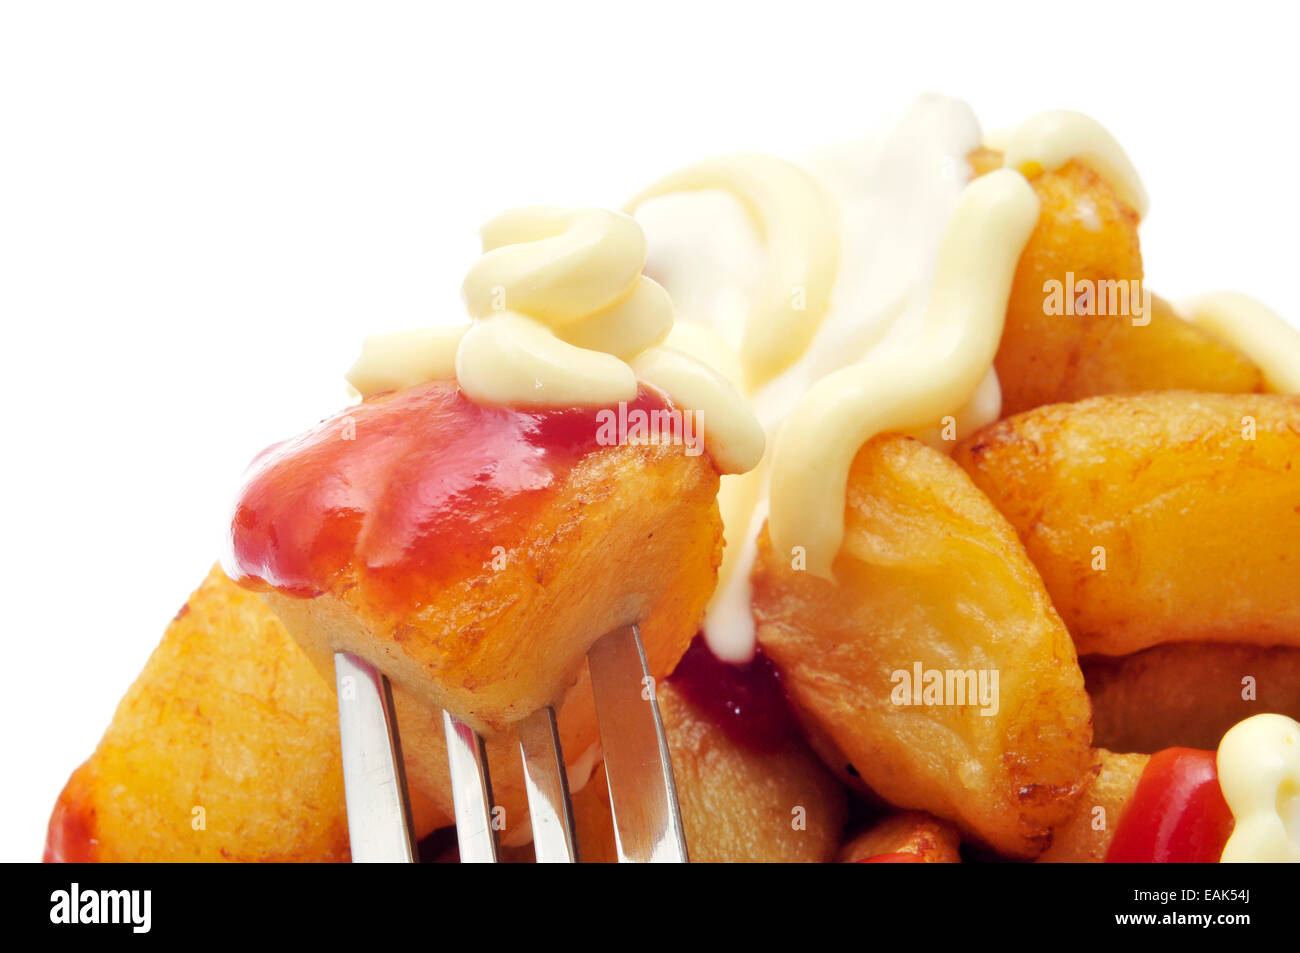 Libre de certains plats typiques espagnols patatas bravas, pommes de terre sautées avec une sauce chaude, sur un fond blanc Banque D'Images